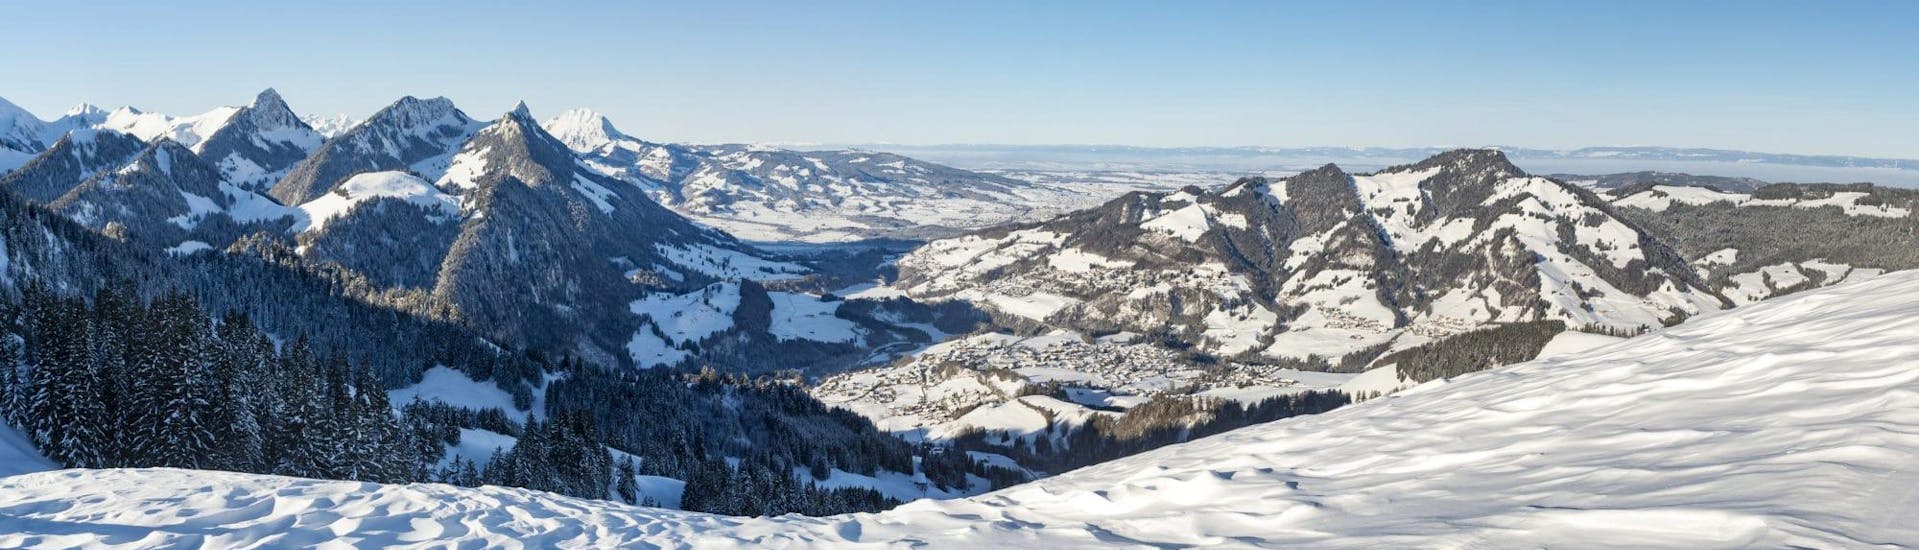 Ein Blick auf die Berge rund um das Skigebiet Charmey, wo die Schweizer Skischule Charmey ihre Skikurse für all diejenigen anbietet, die das Skifahren lernen wollen.